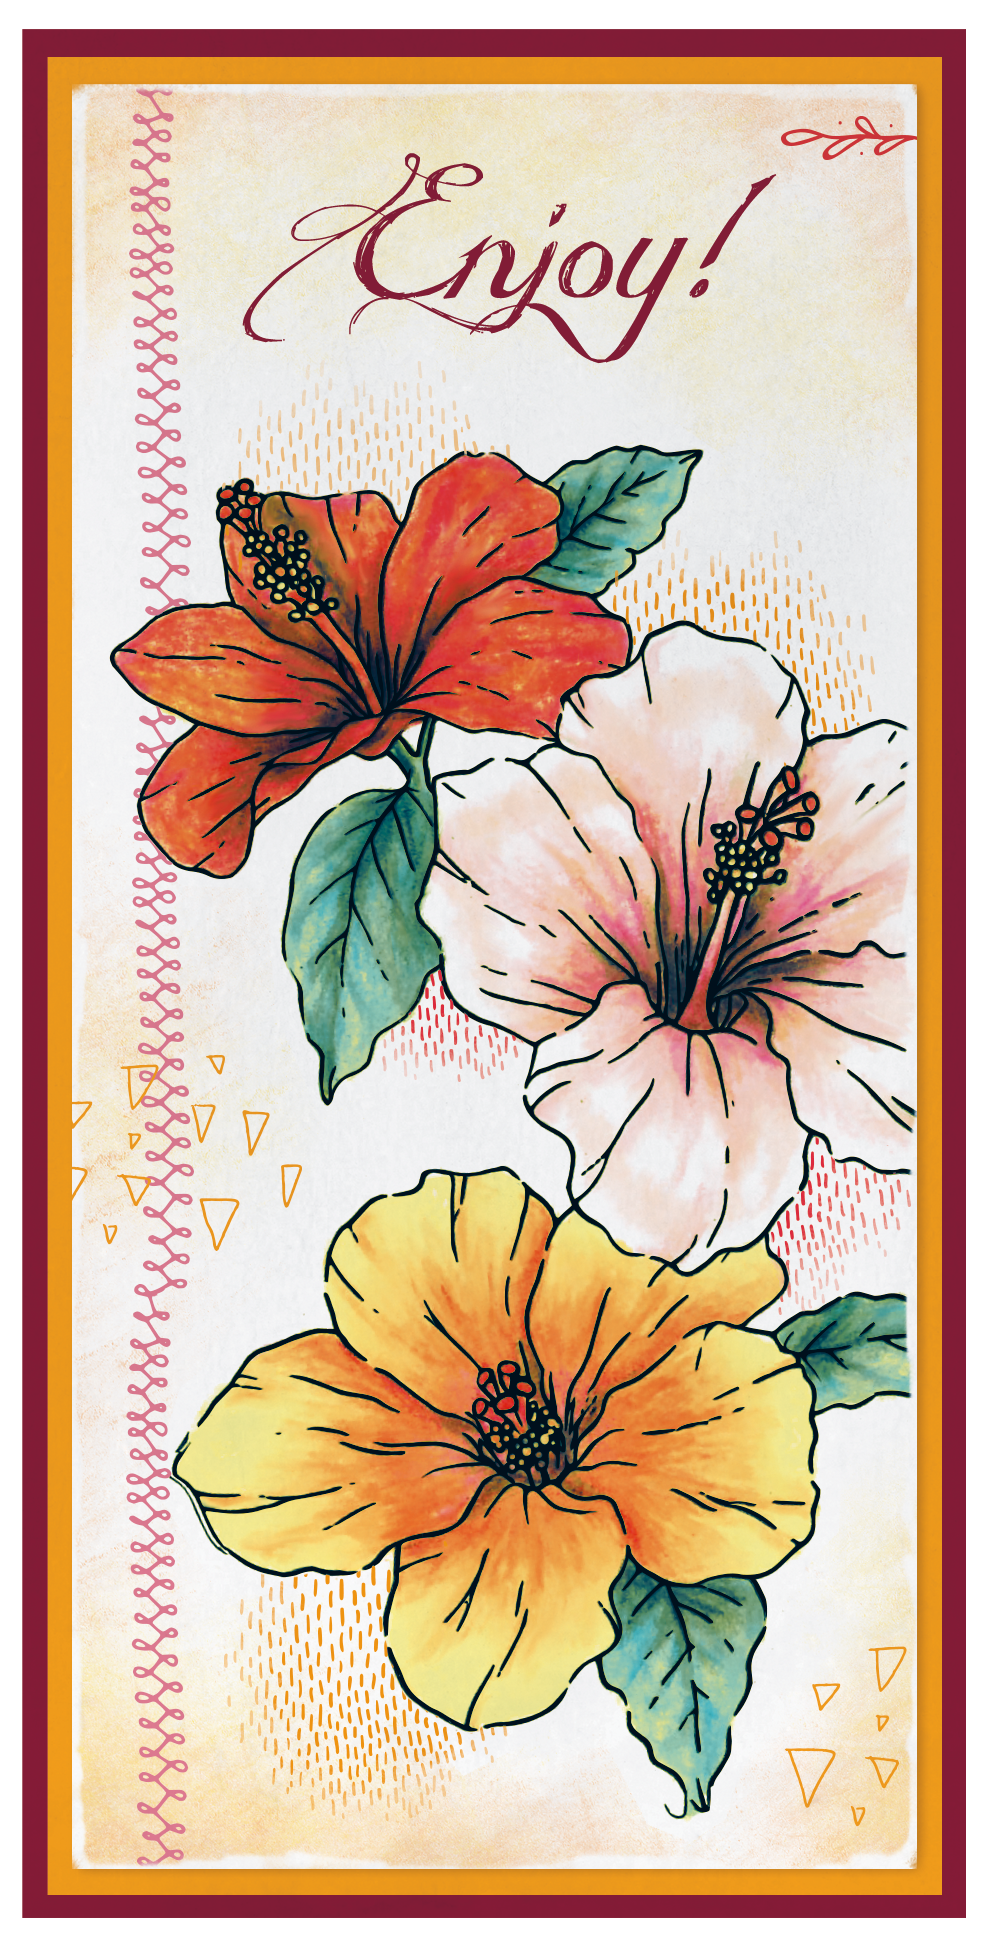 SL Clear Stamp Set of 4 (Floral)